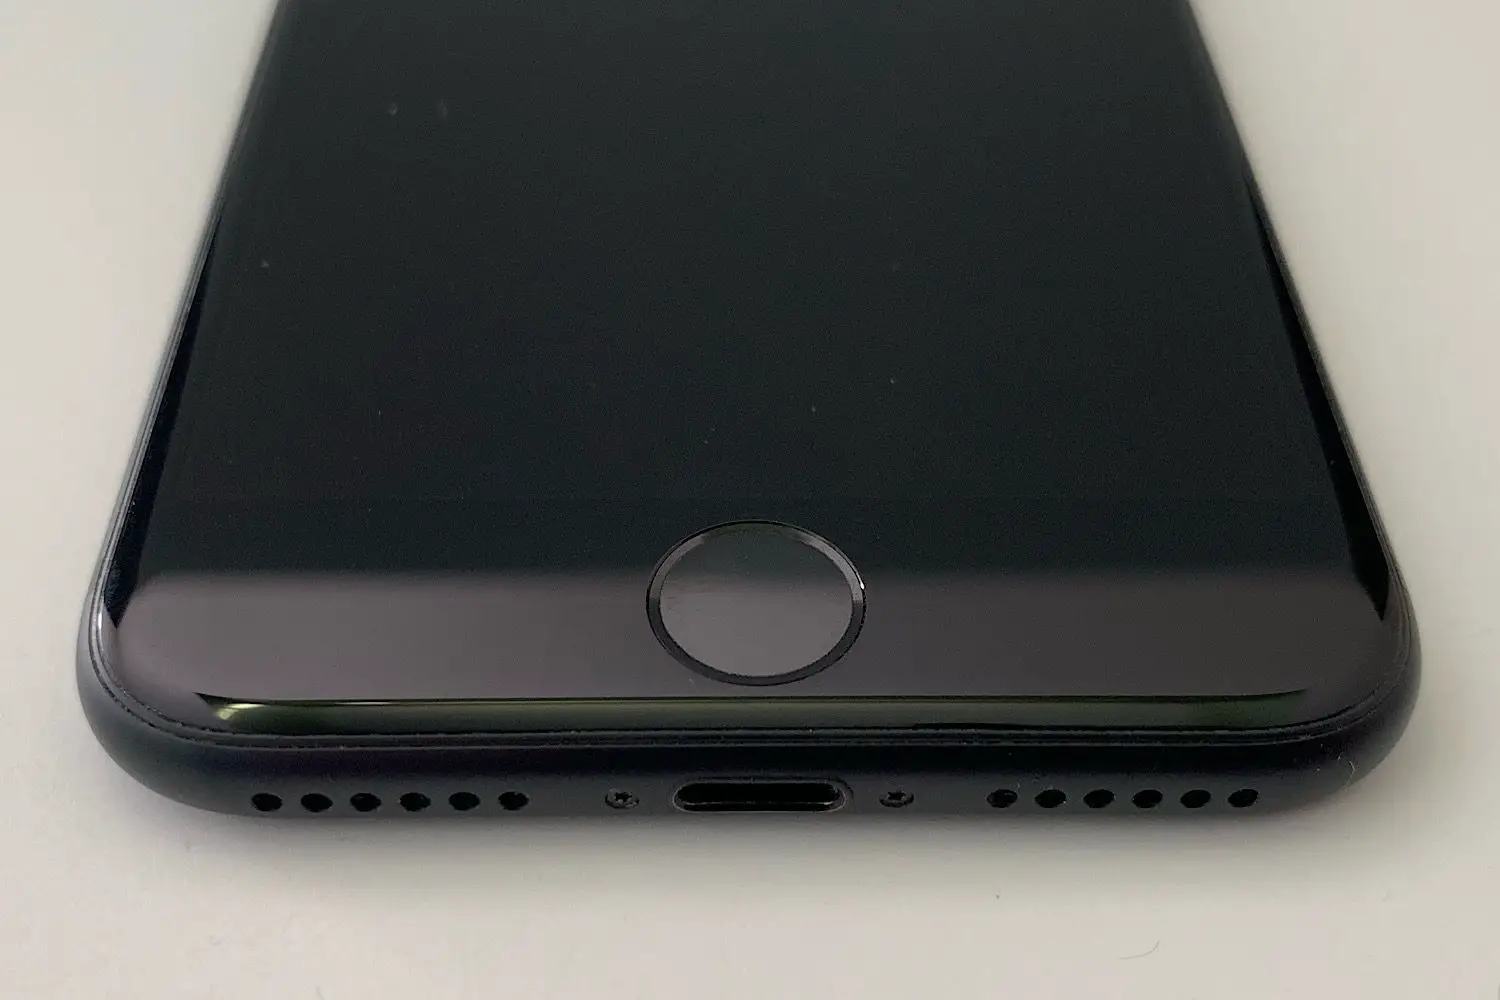 Foto do iPhone 7 com zoom no botão Touch ID / home na parte inferior do telefone.